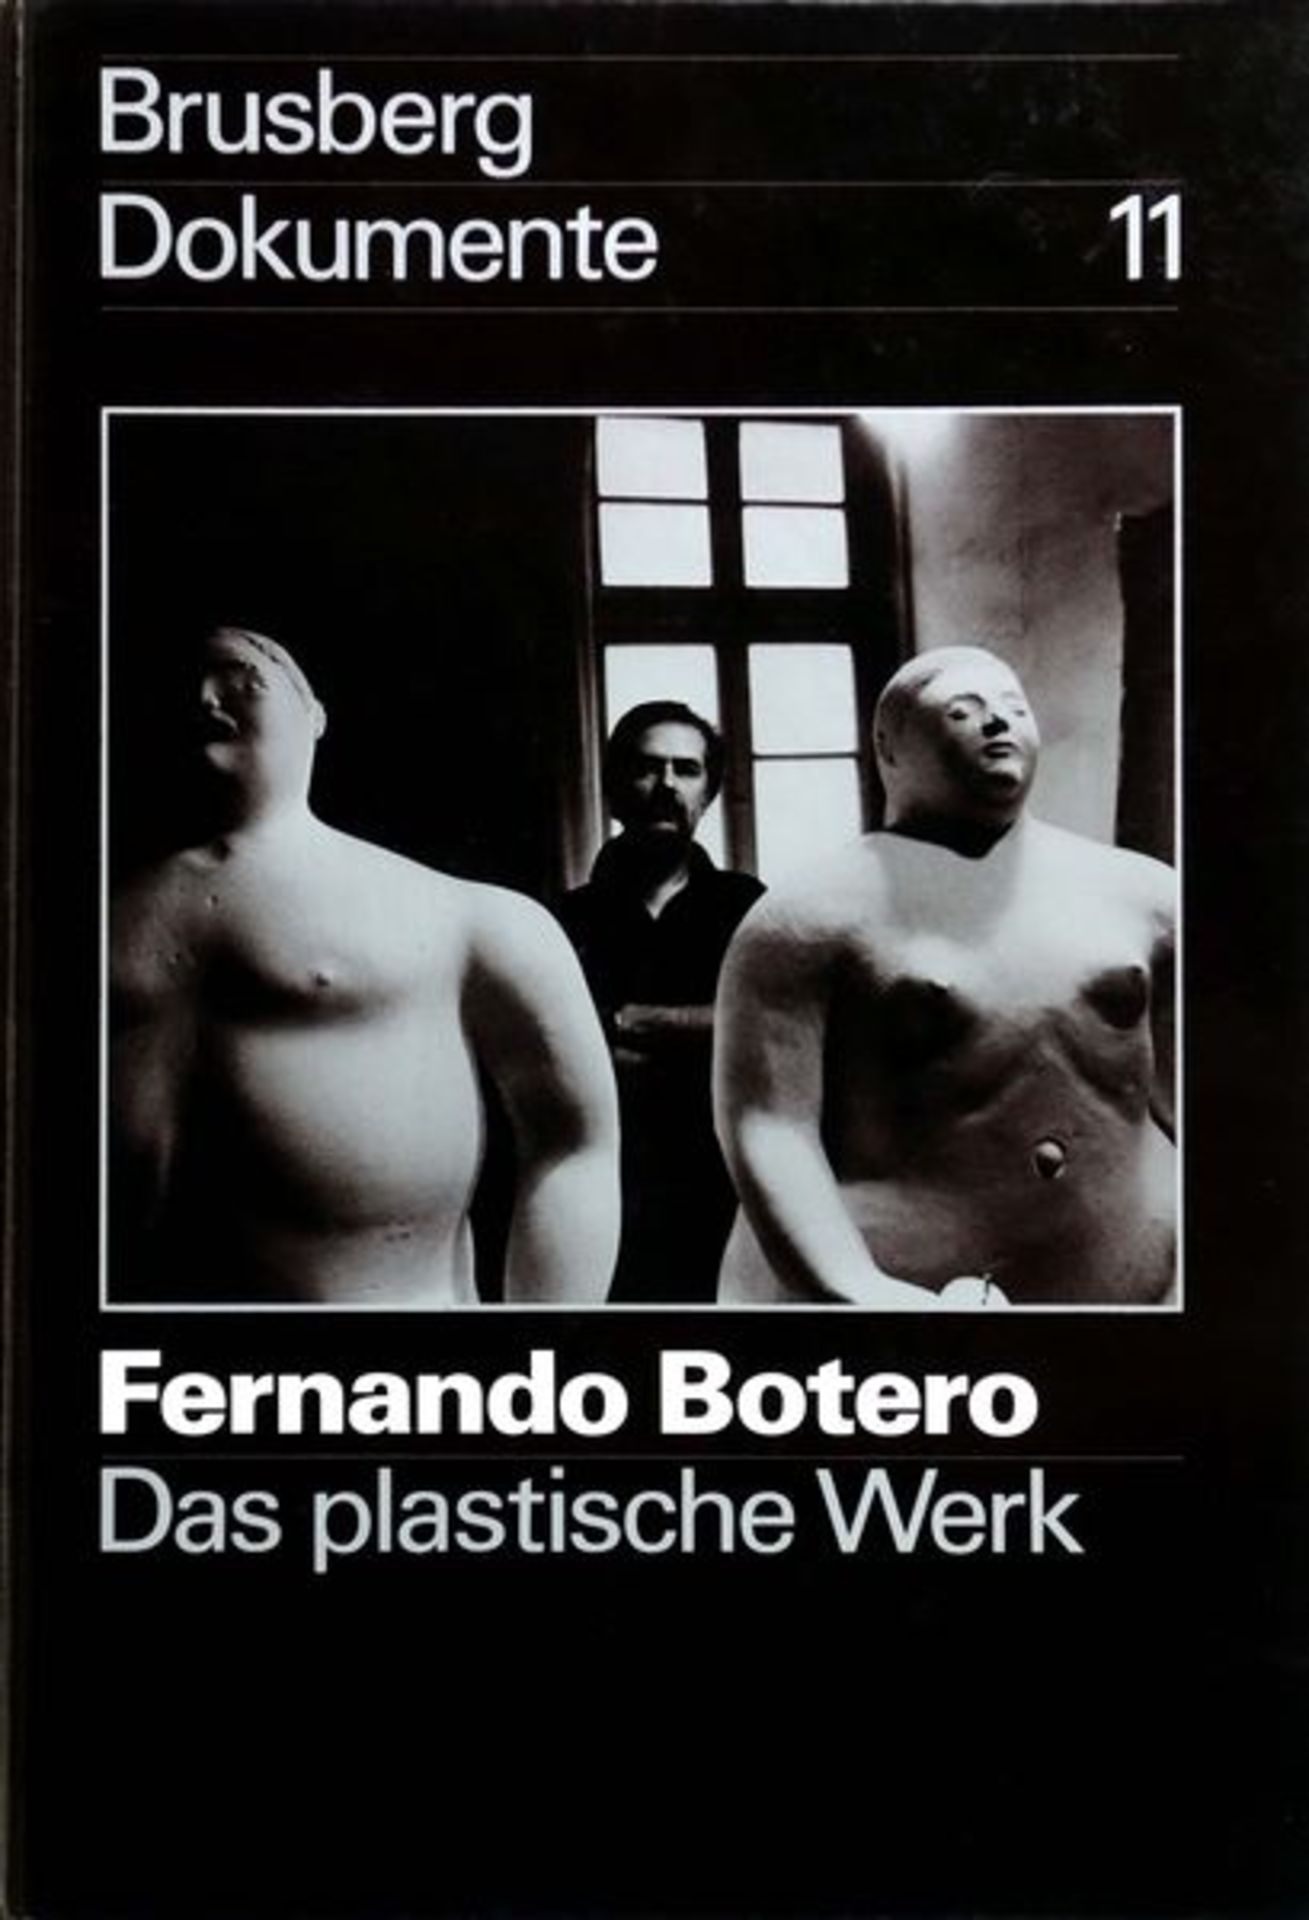 Botero, Fernando 33 x 22,5 cm Das plastische Werk (1978) "Brusberg Dokumente", 11. Ausstellung des